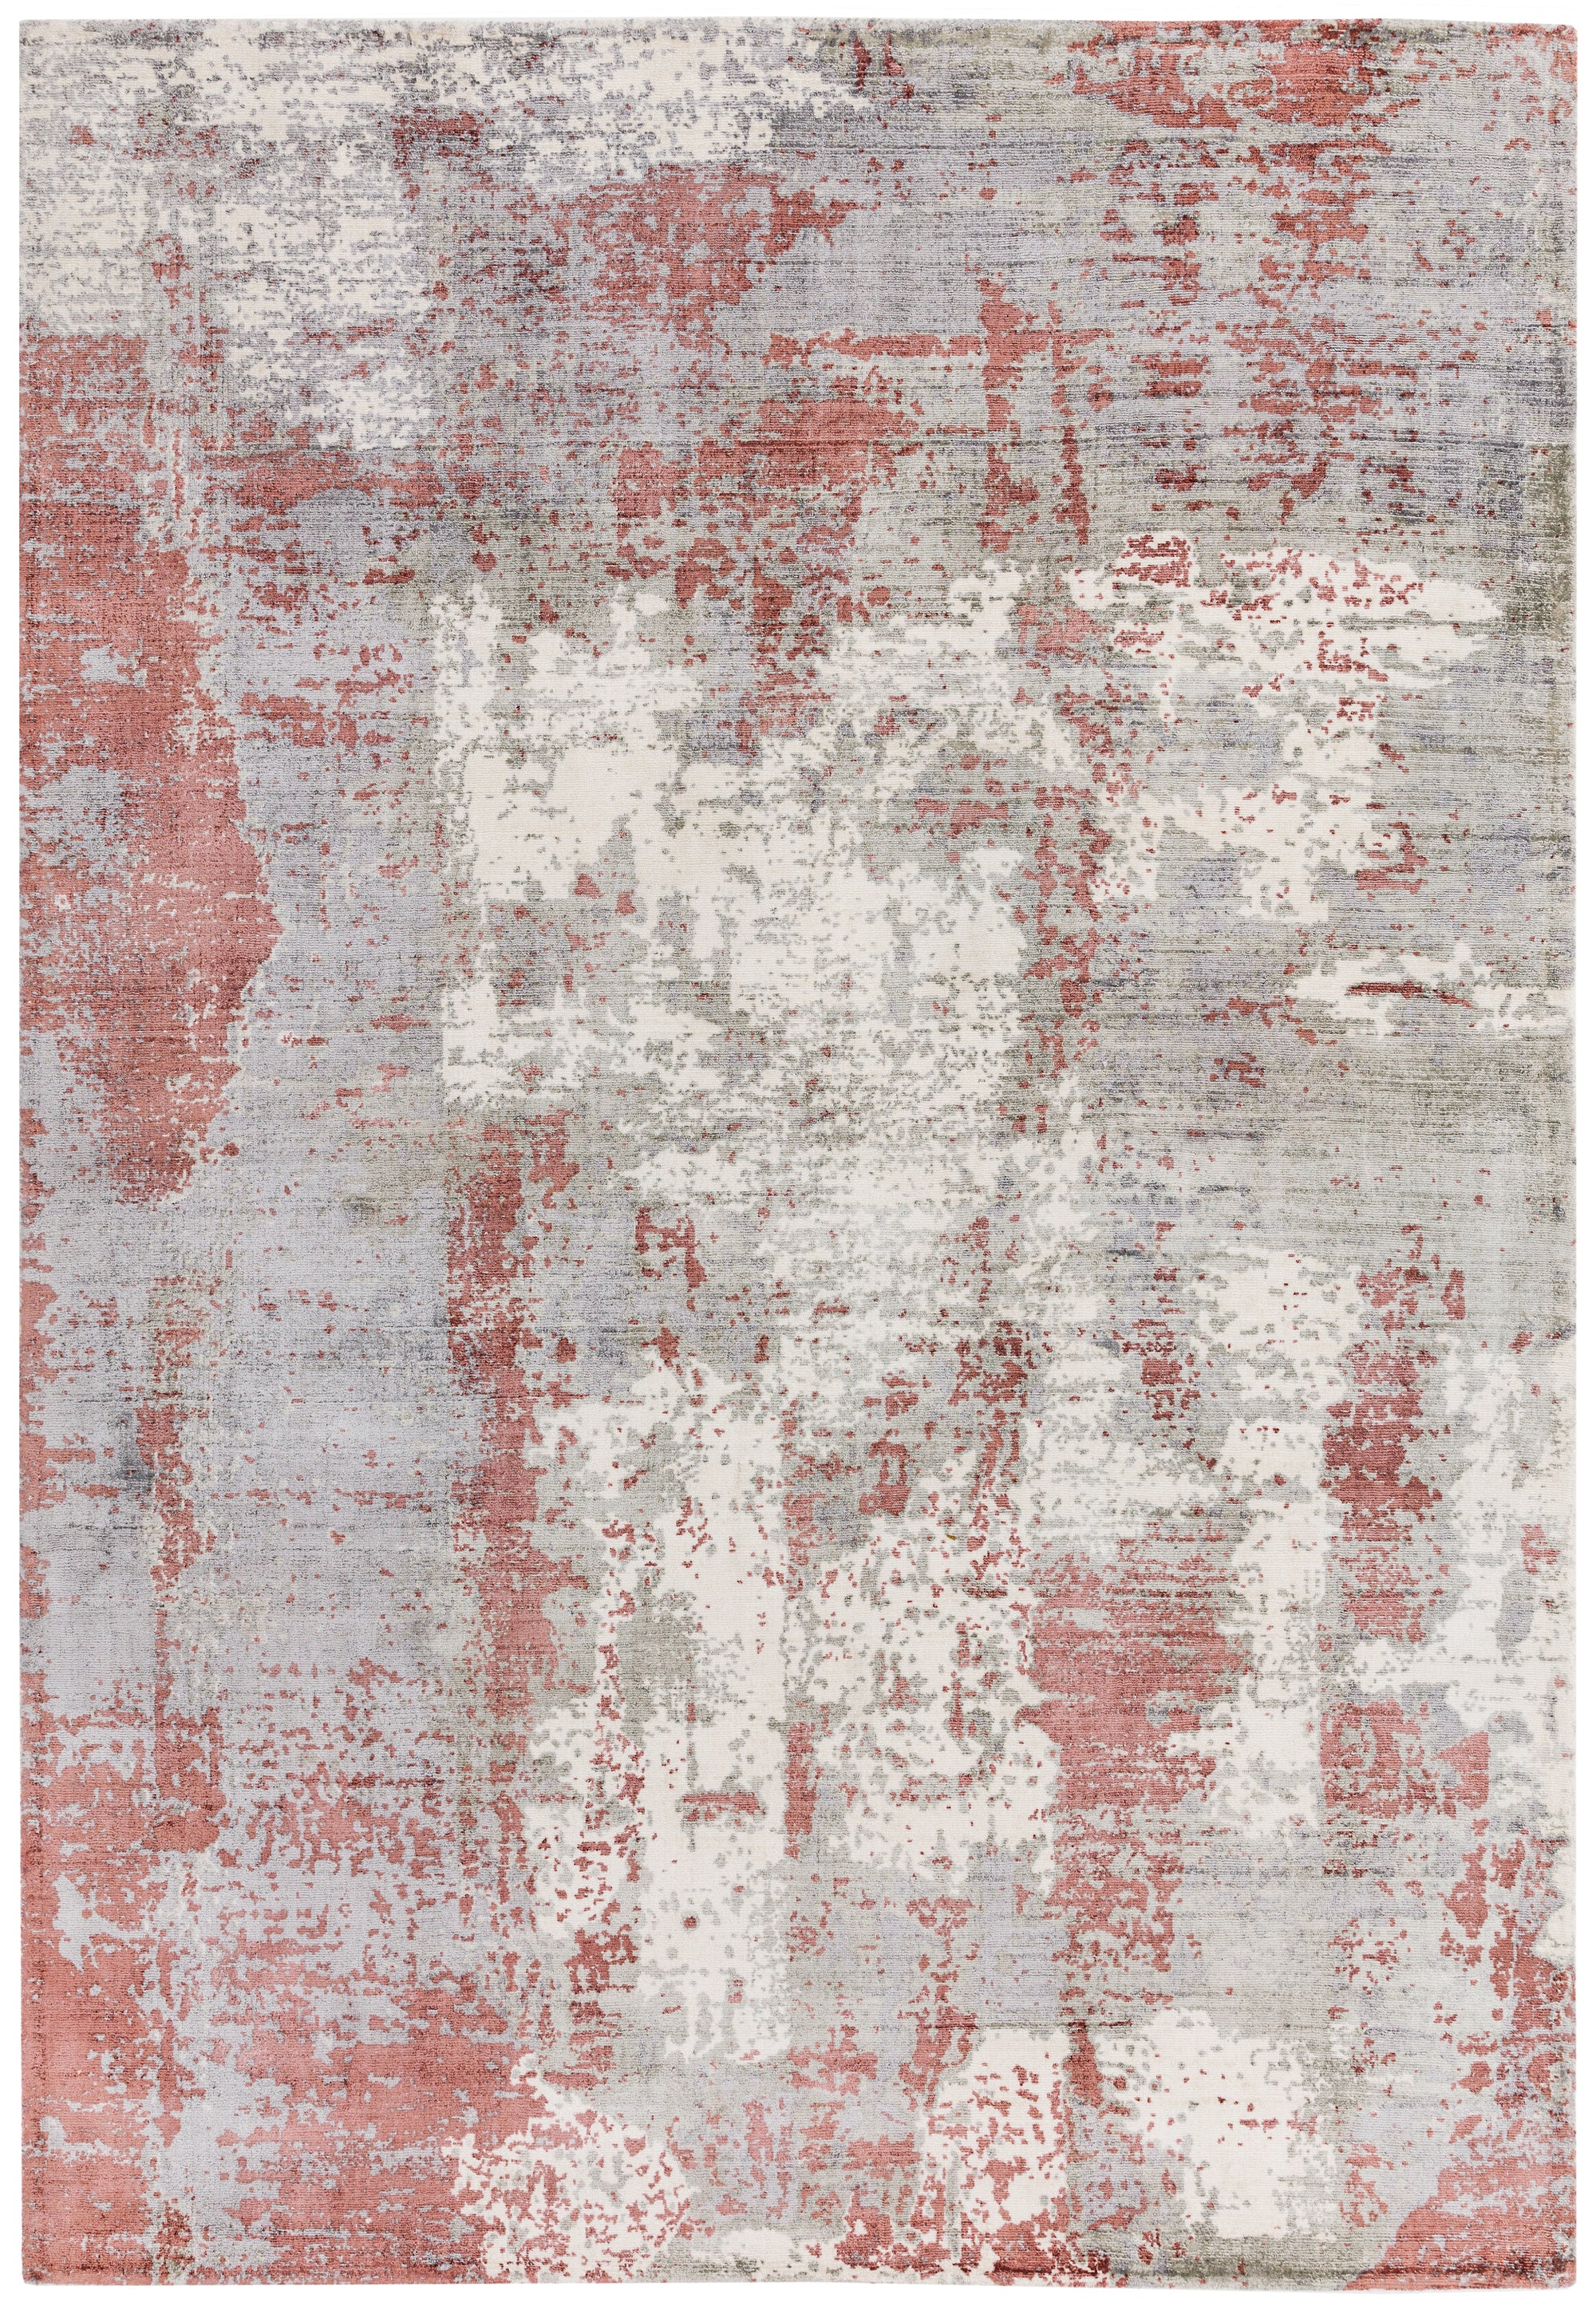 Gatsby Red rug Contemporary Design